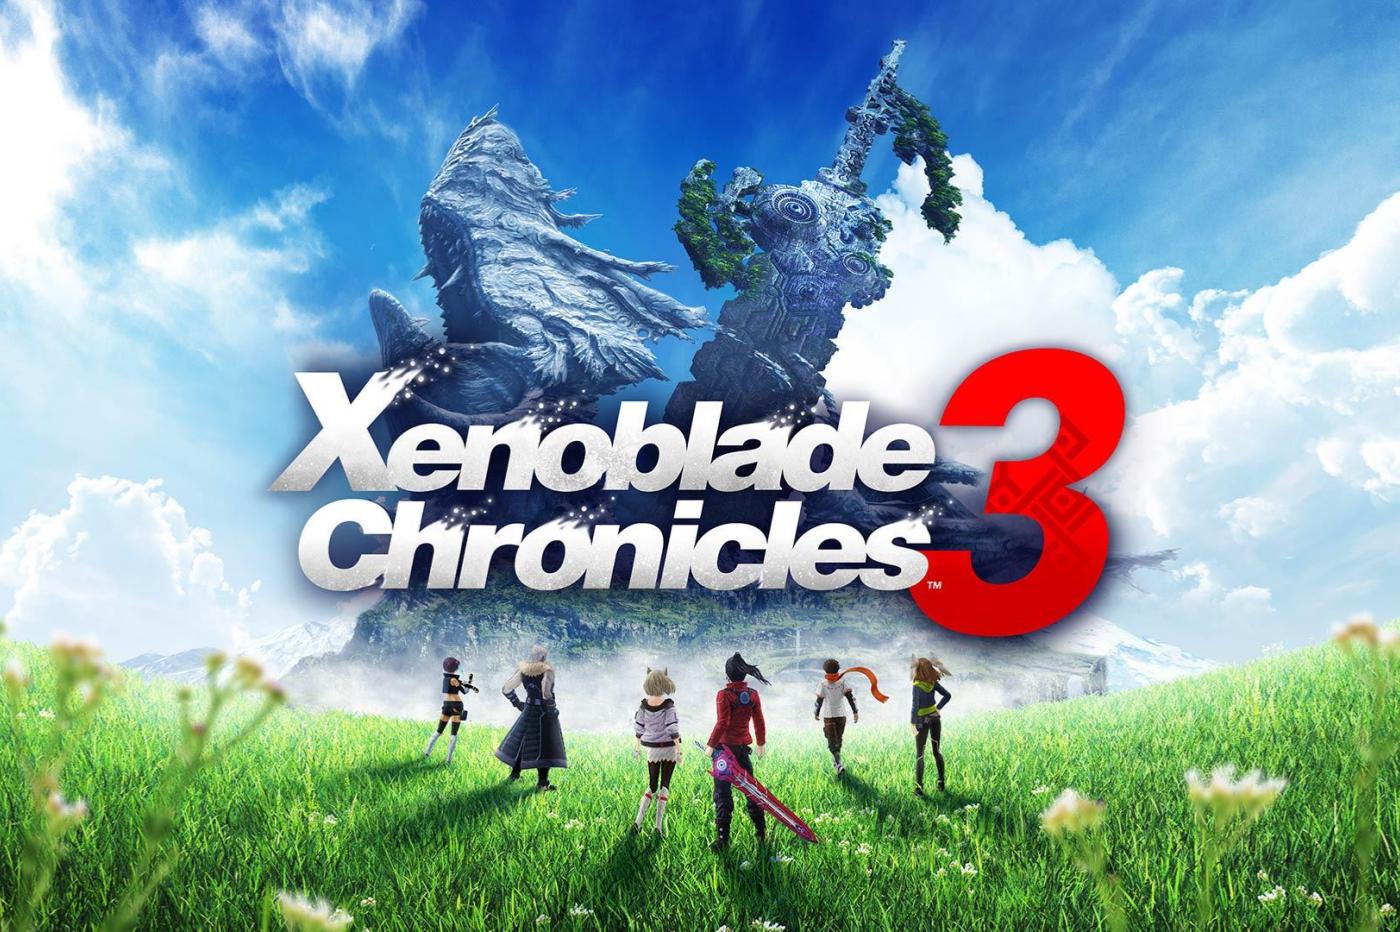 Image promotionnelle de Xenoblade Chronicles 3 avec les héros debout dans une plaine devant deux grandes structures en forme de créature